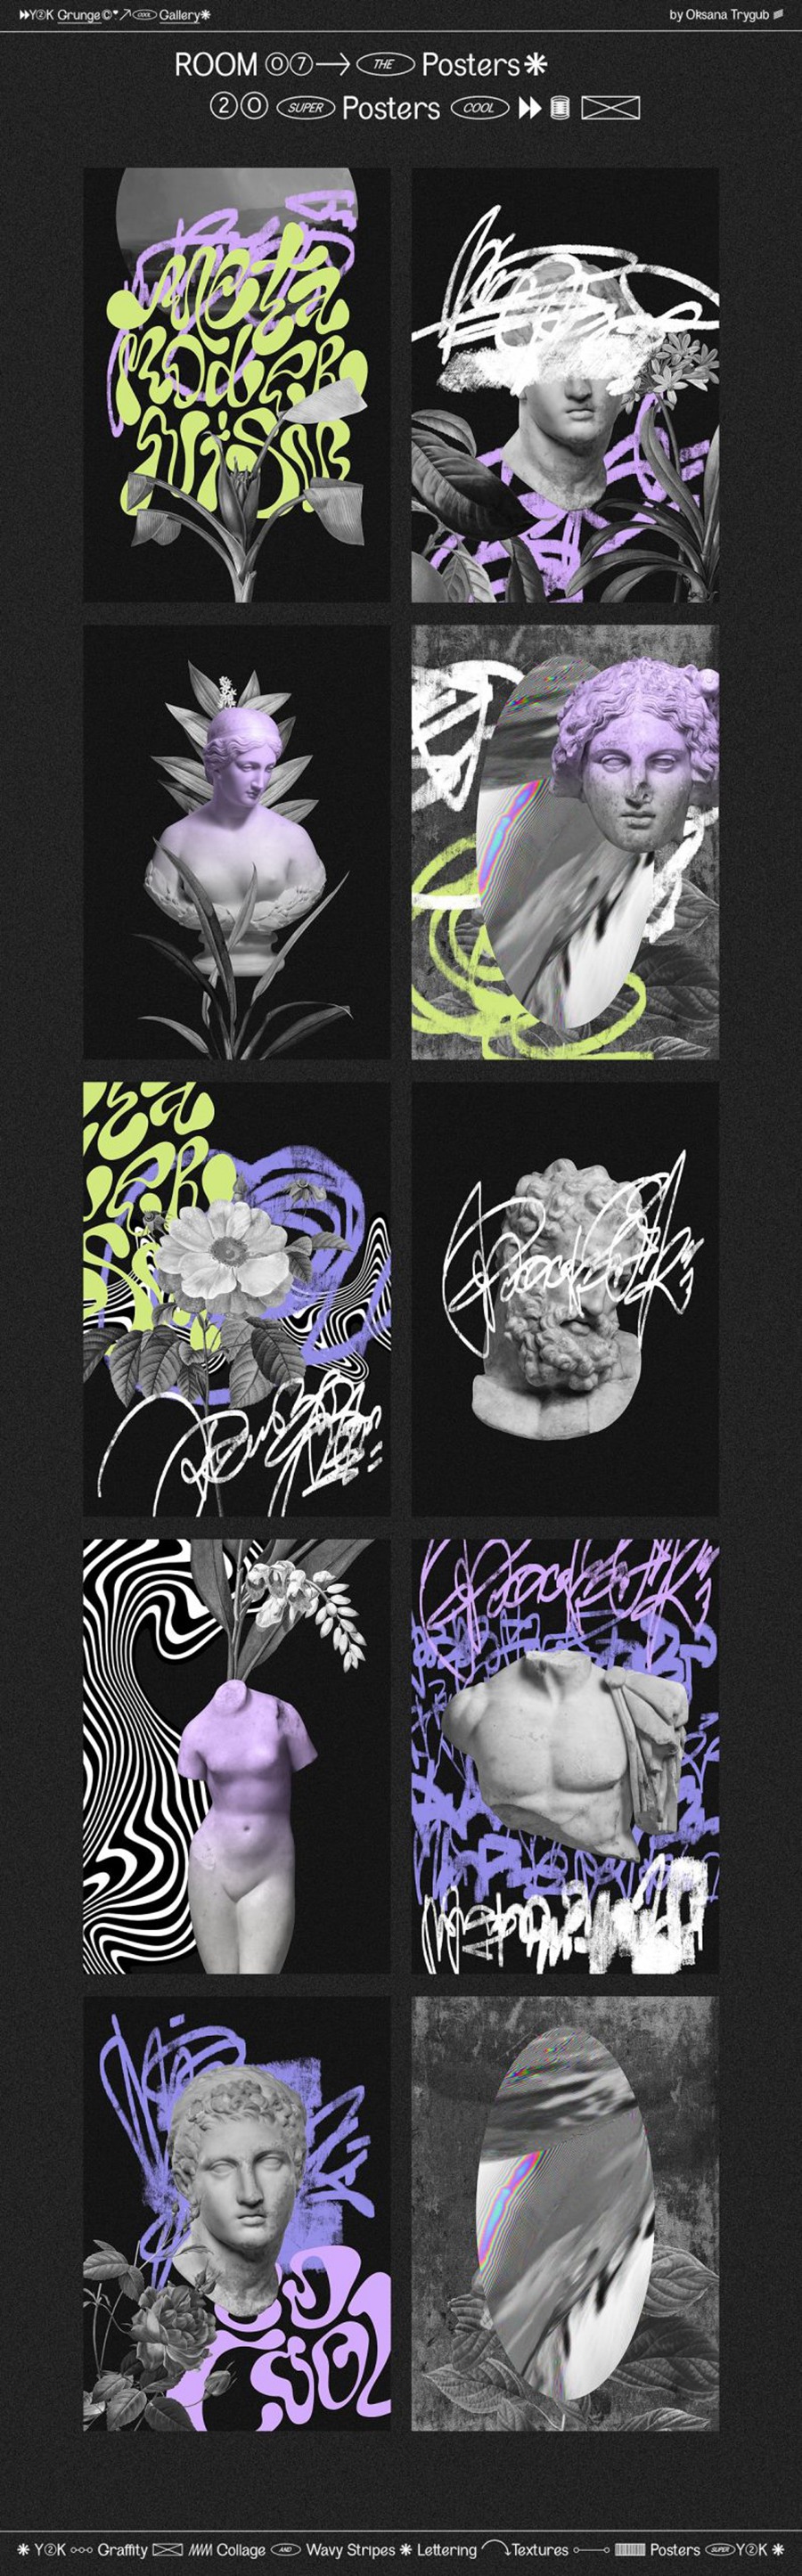 千禧年涂鸦垃圾美学Y2K涂鸦迷幻拼贴艺术波浪条纹背景形状素材包 Grunge Gallery: Graffiti Collage . 第23张